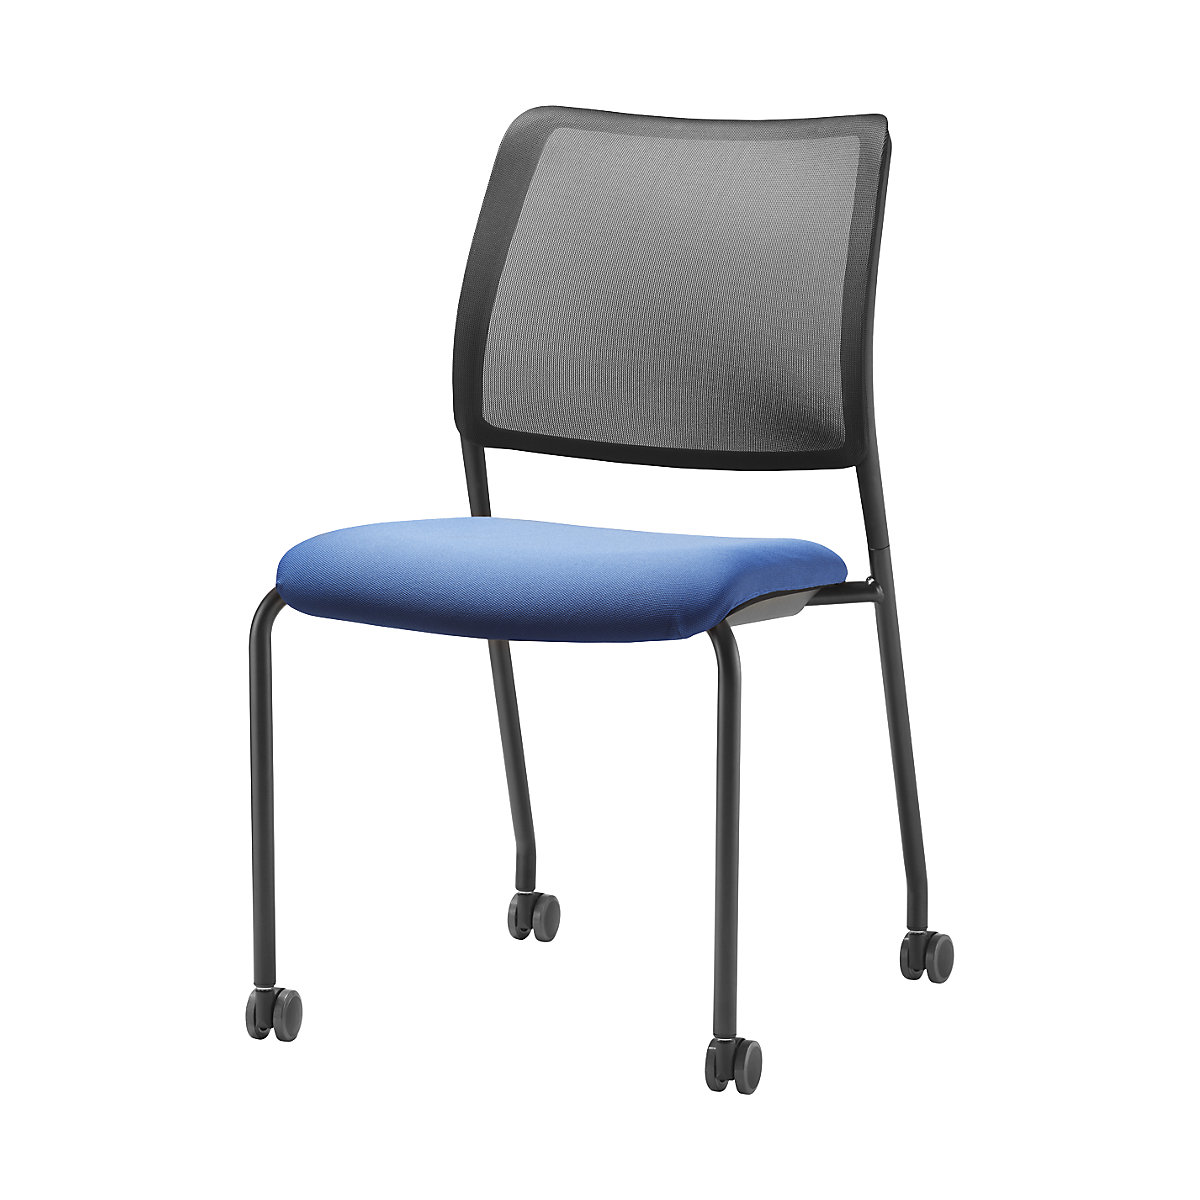 Návlek na sedák TO-SYNC – TrendOffice, pro jednací židli, azurová-6